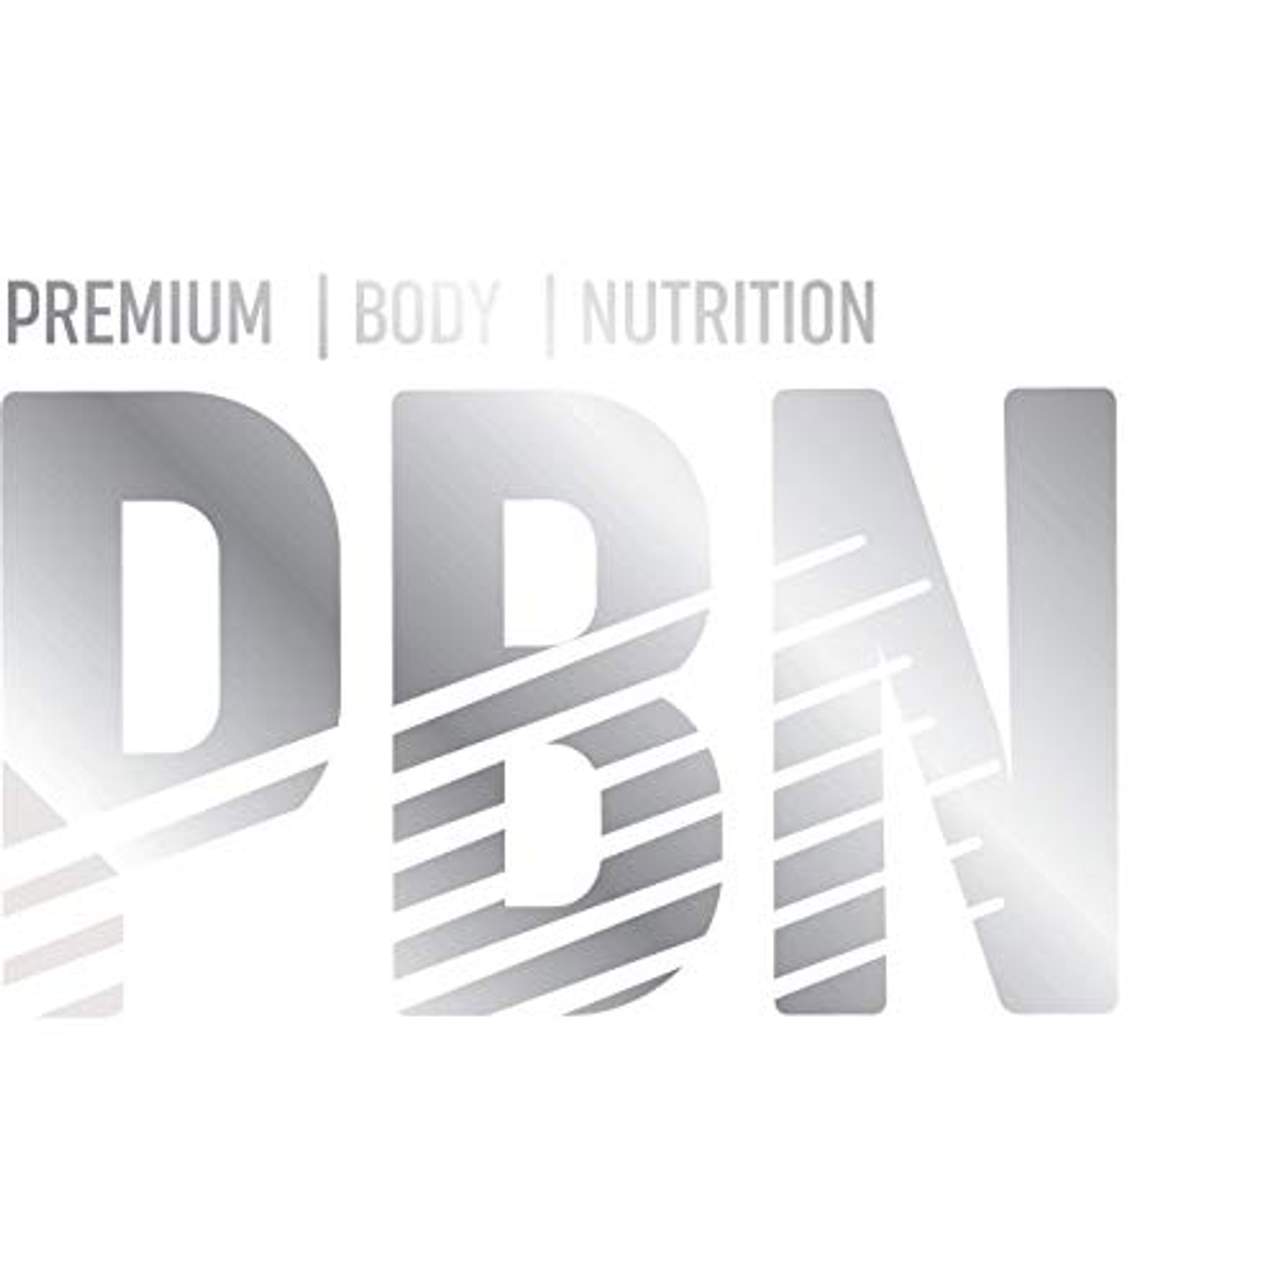 Premium Body Nutrition Micellar Casein Vanilla 1kg Pouch